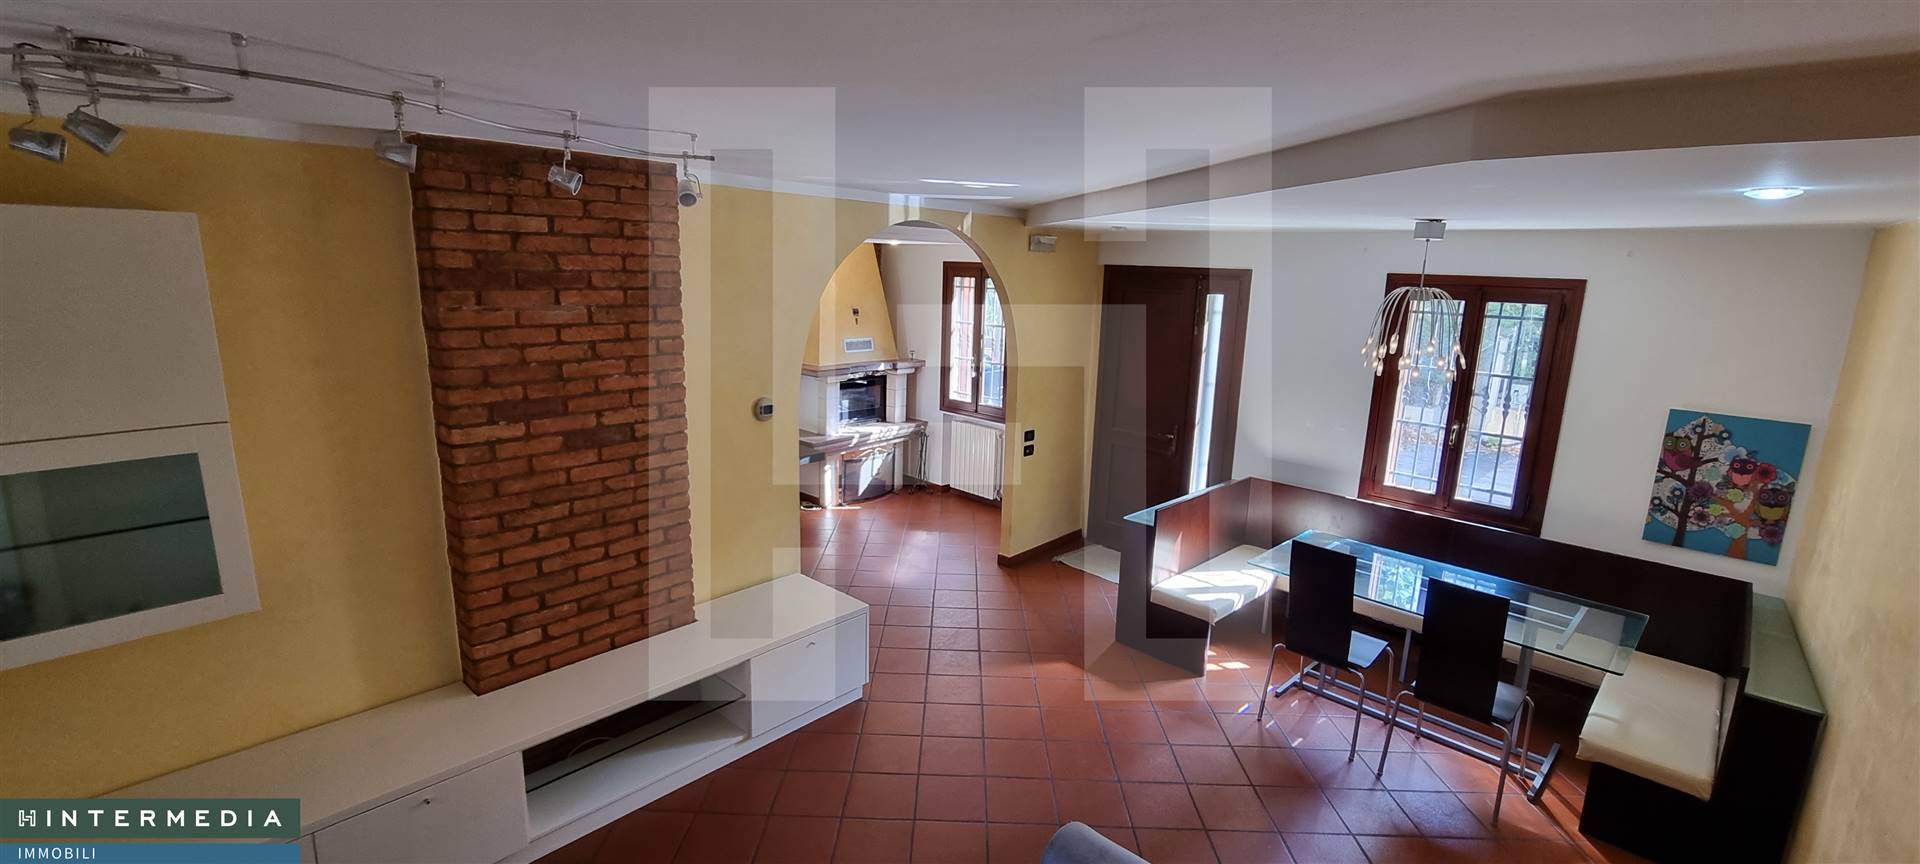 Villa a Schiera in vendita a Noventa Padovana, 6 locali, prezzo € 210.000 | PortaleAgenzieImmobiliari.it